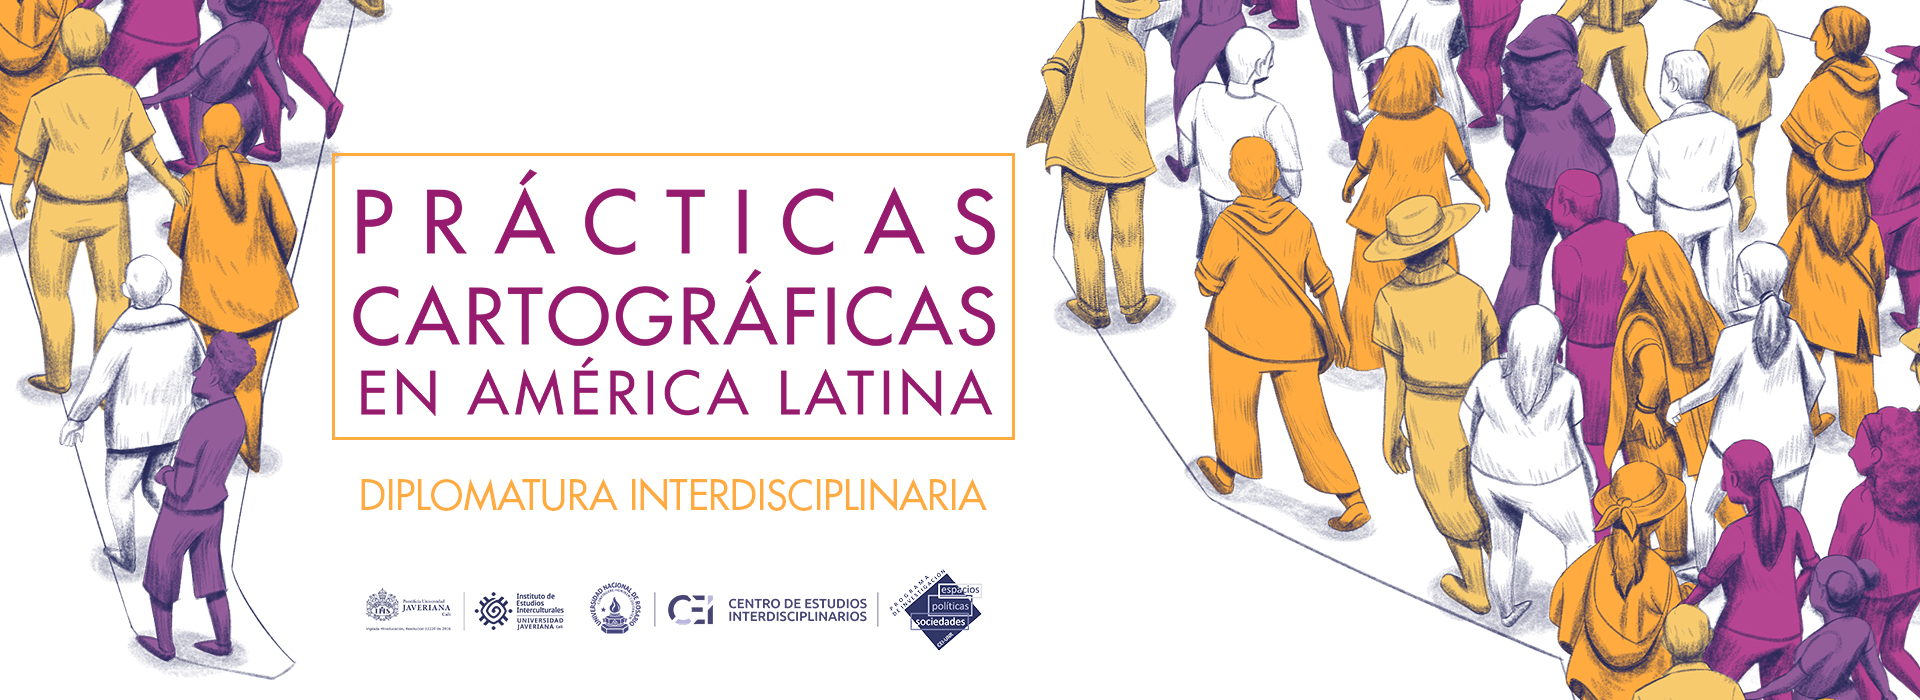 Prácticas cartográficas en América Latina